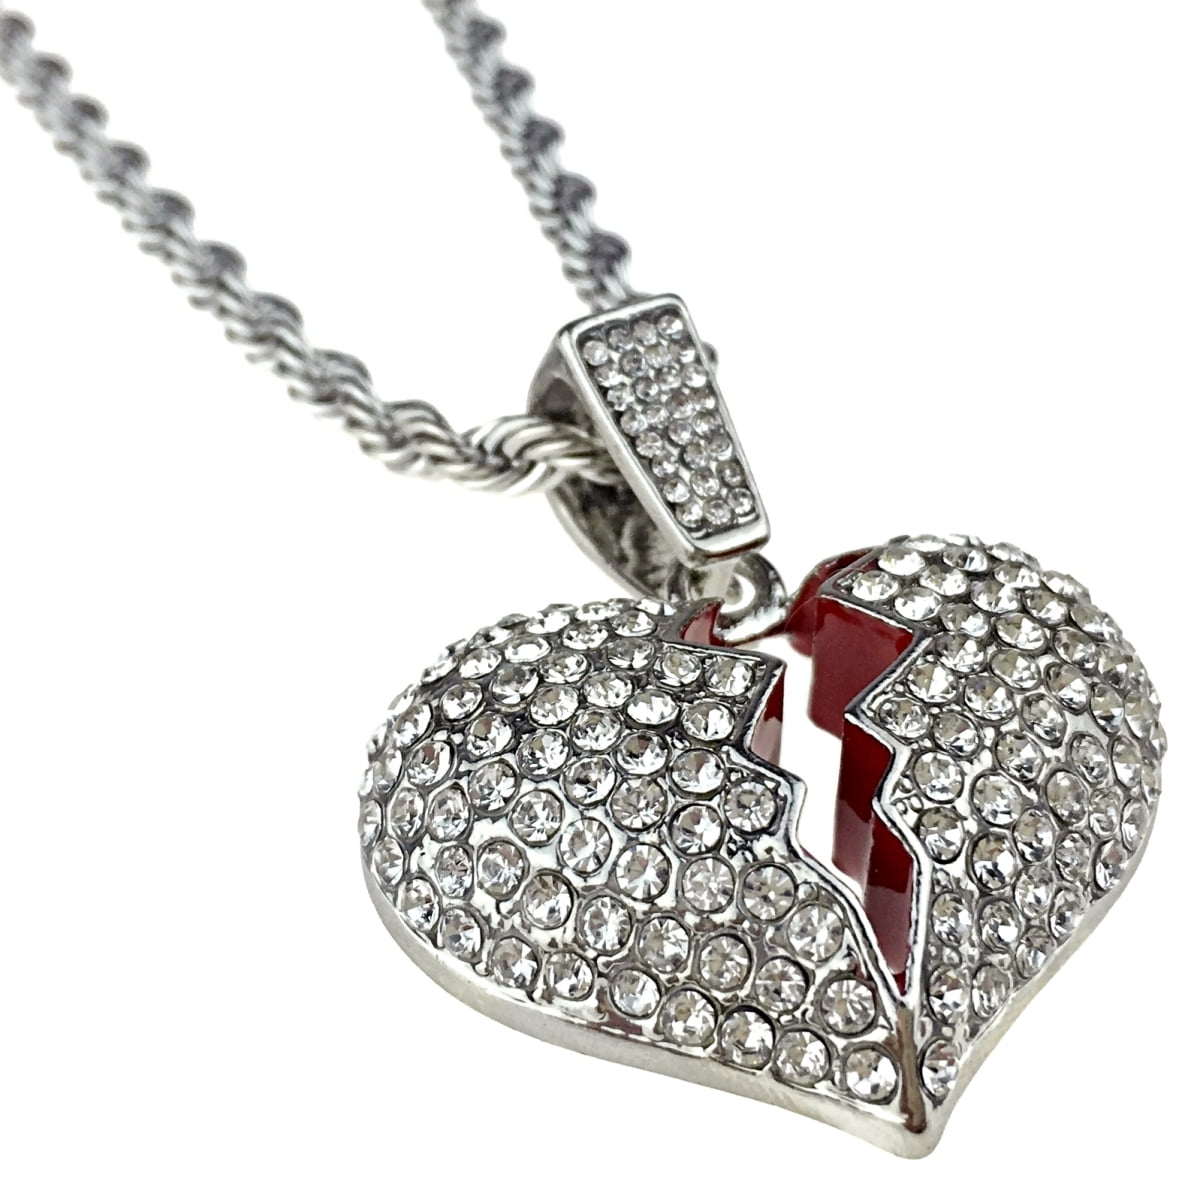 Chrysoprase Necklace, Broken Heart Necklace, Recycled Silver Necklace,  Heart Necklace, Heartbreak Necklace, Silver Necklace, Green Pendant, - Etsy